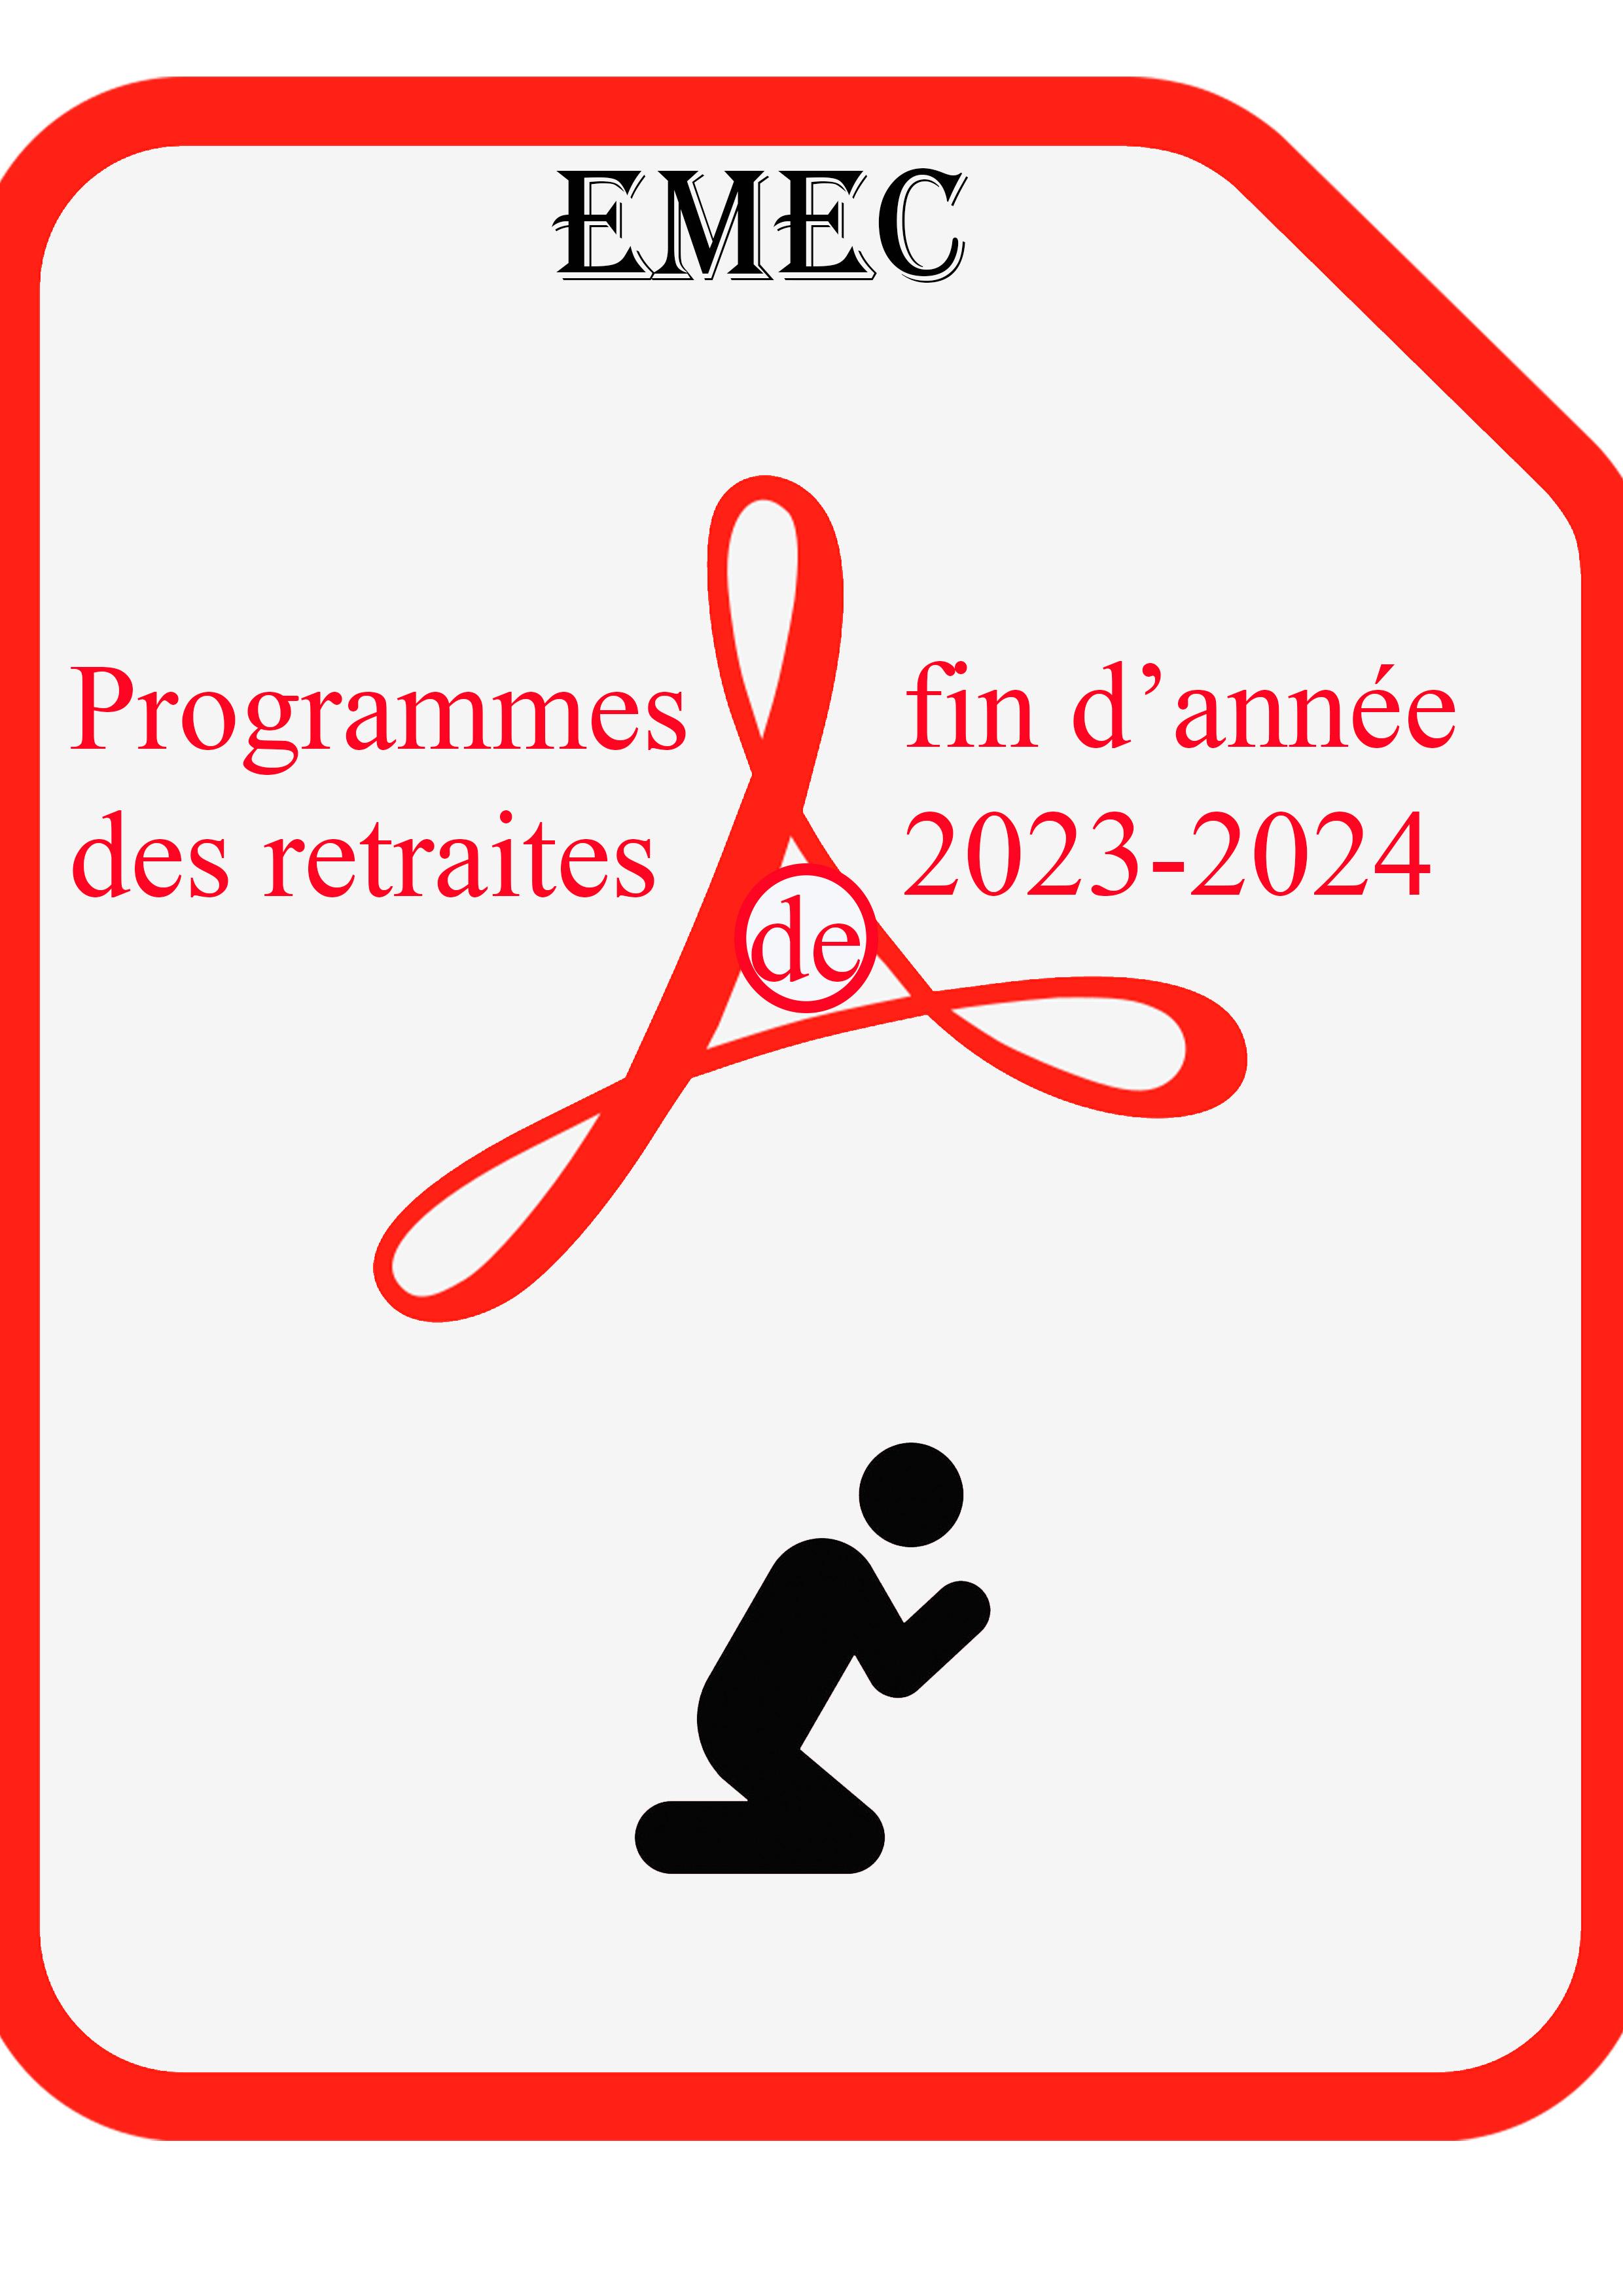 Programme des retraites de fin d’année 2023-2024